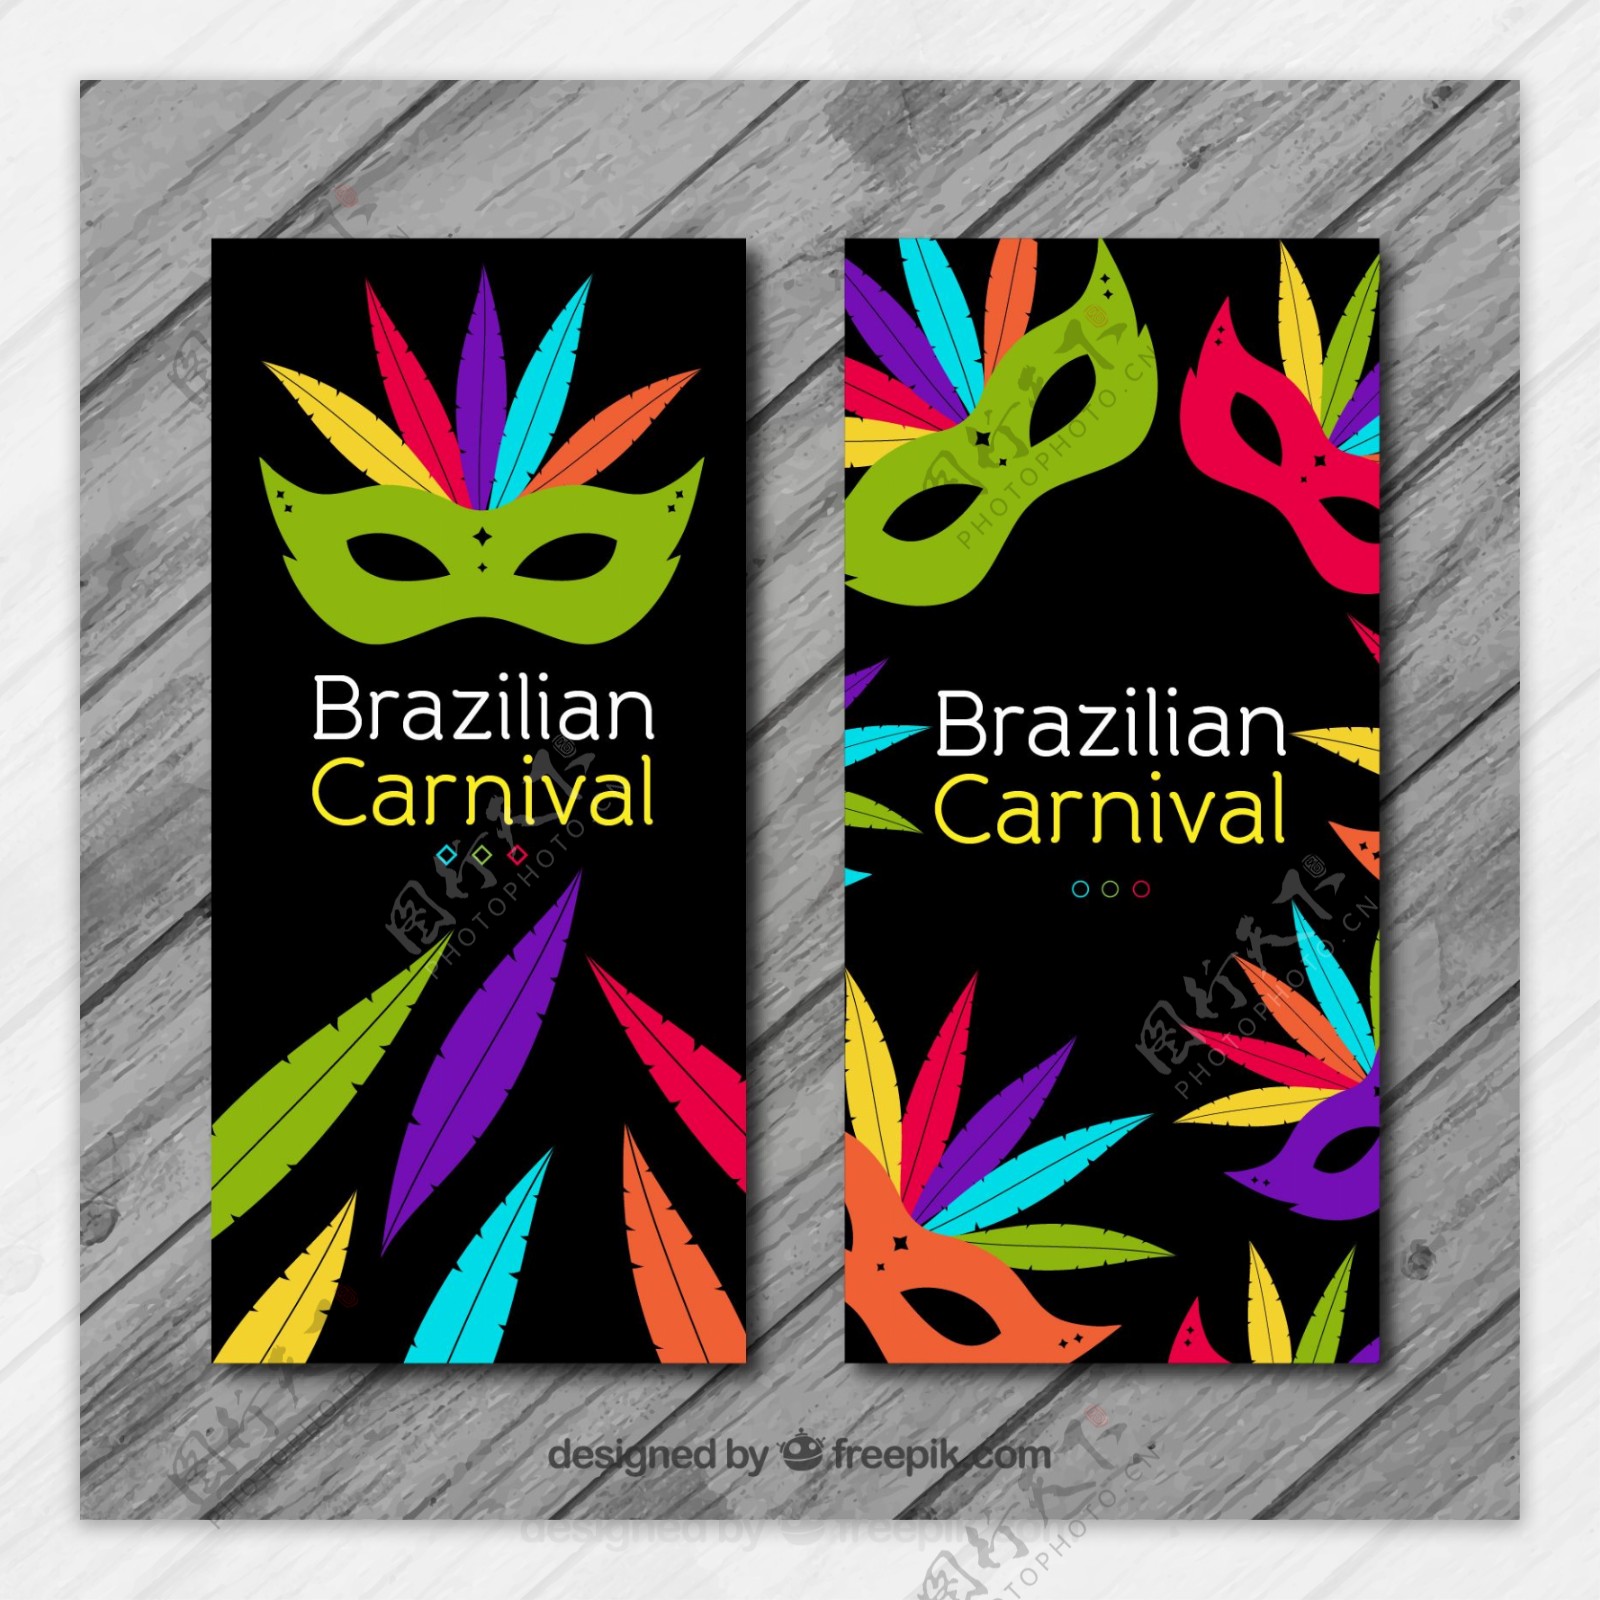 巴西狂欢节的旗帜上有五颜六色的羽毛